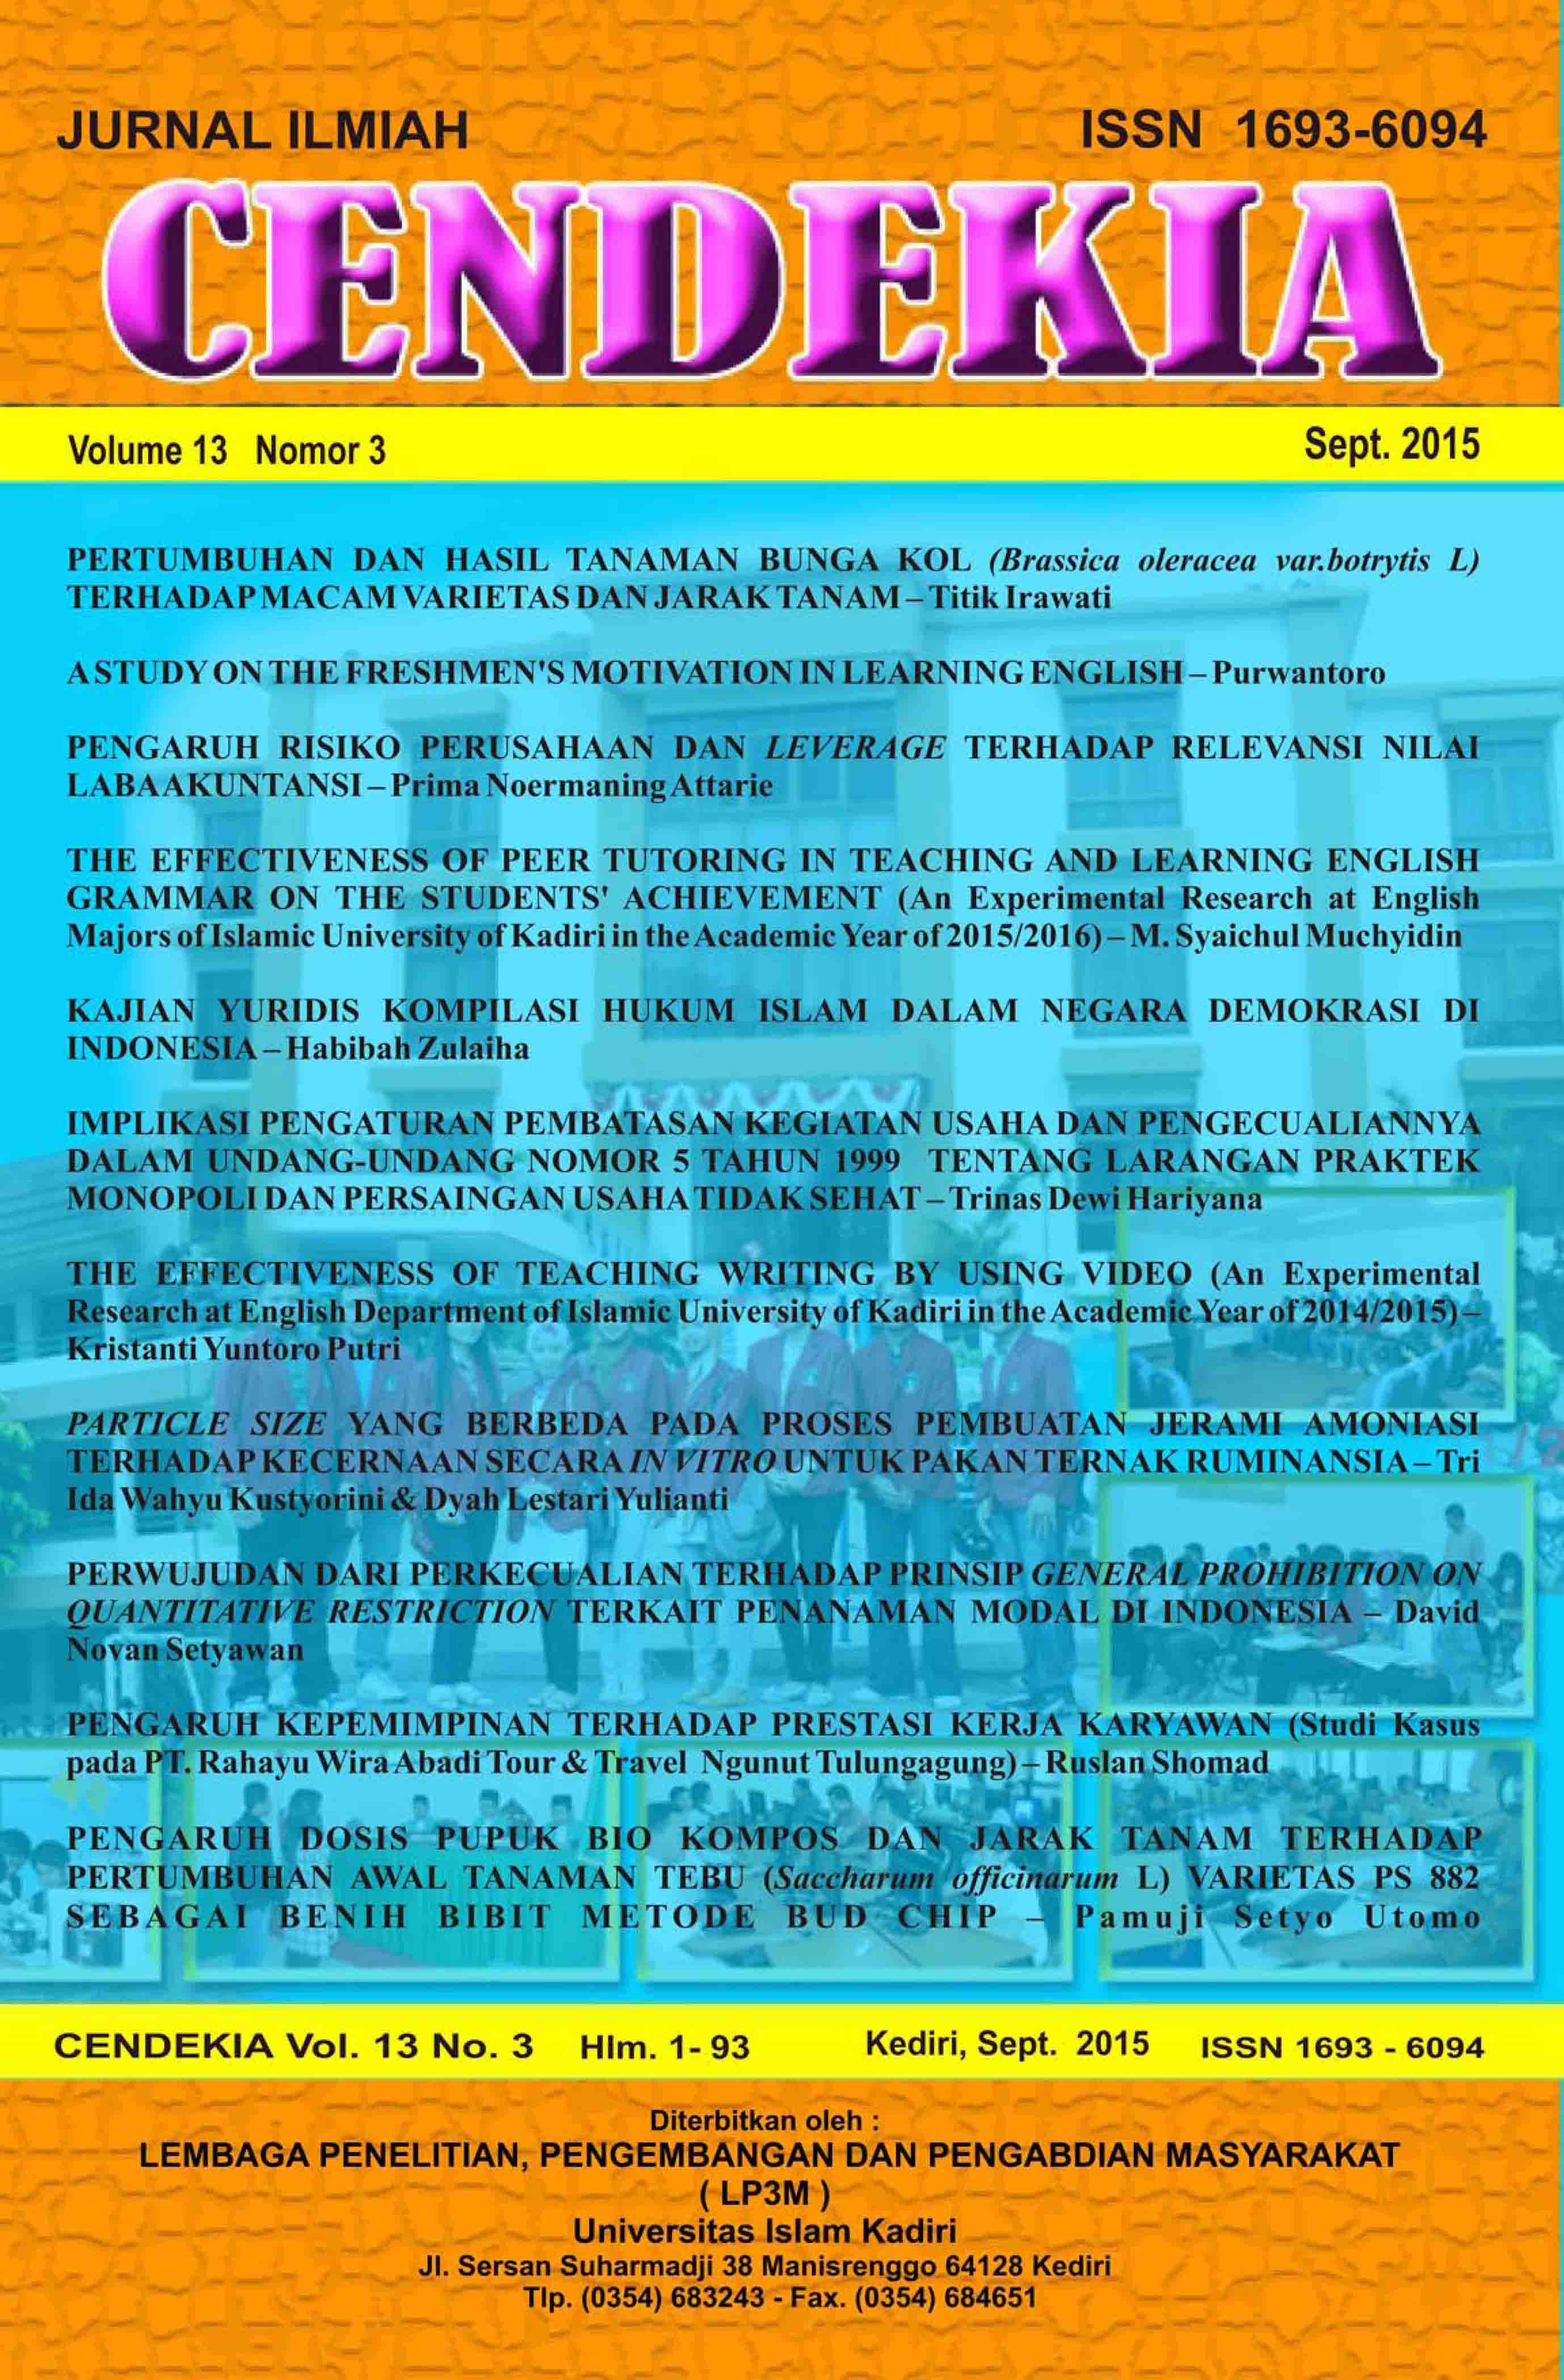 Cendekia Volume 13 No. 3 September 2015